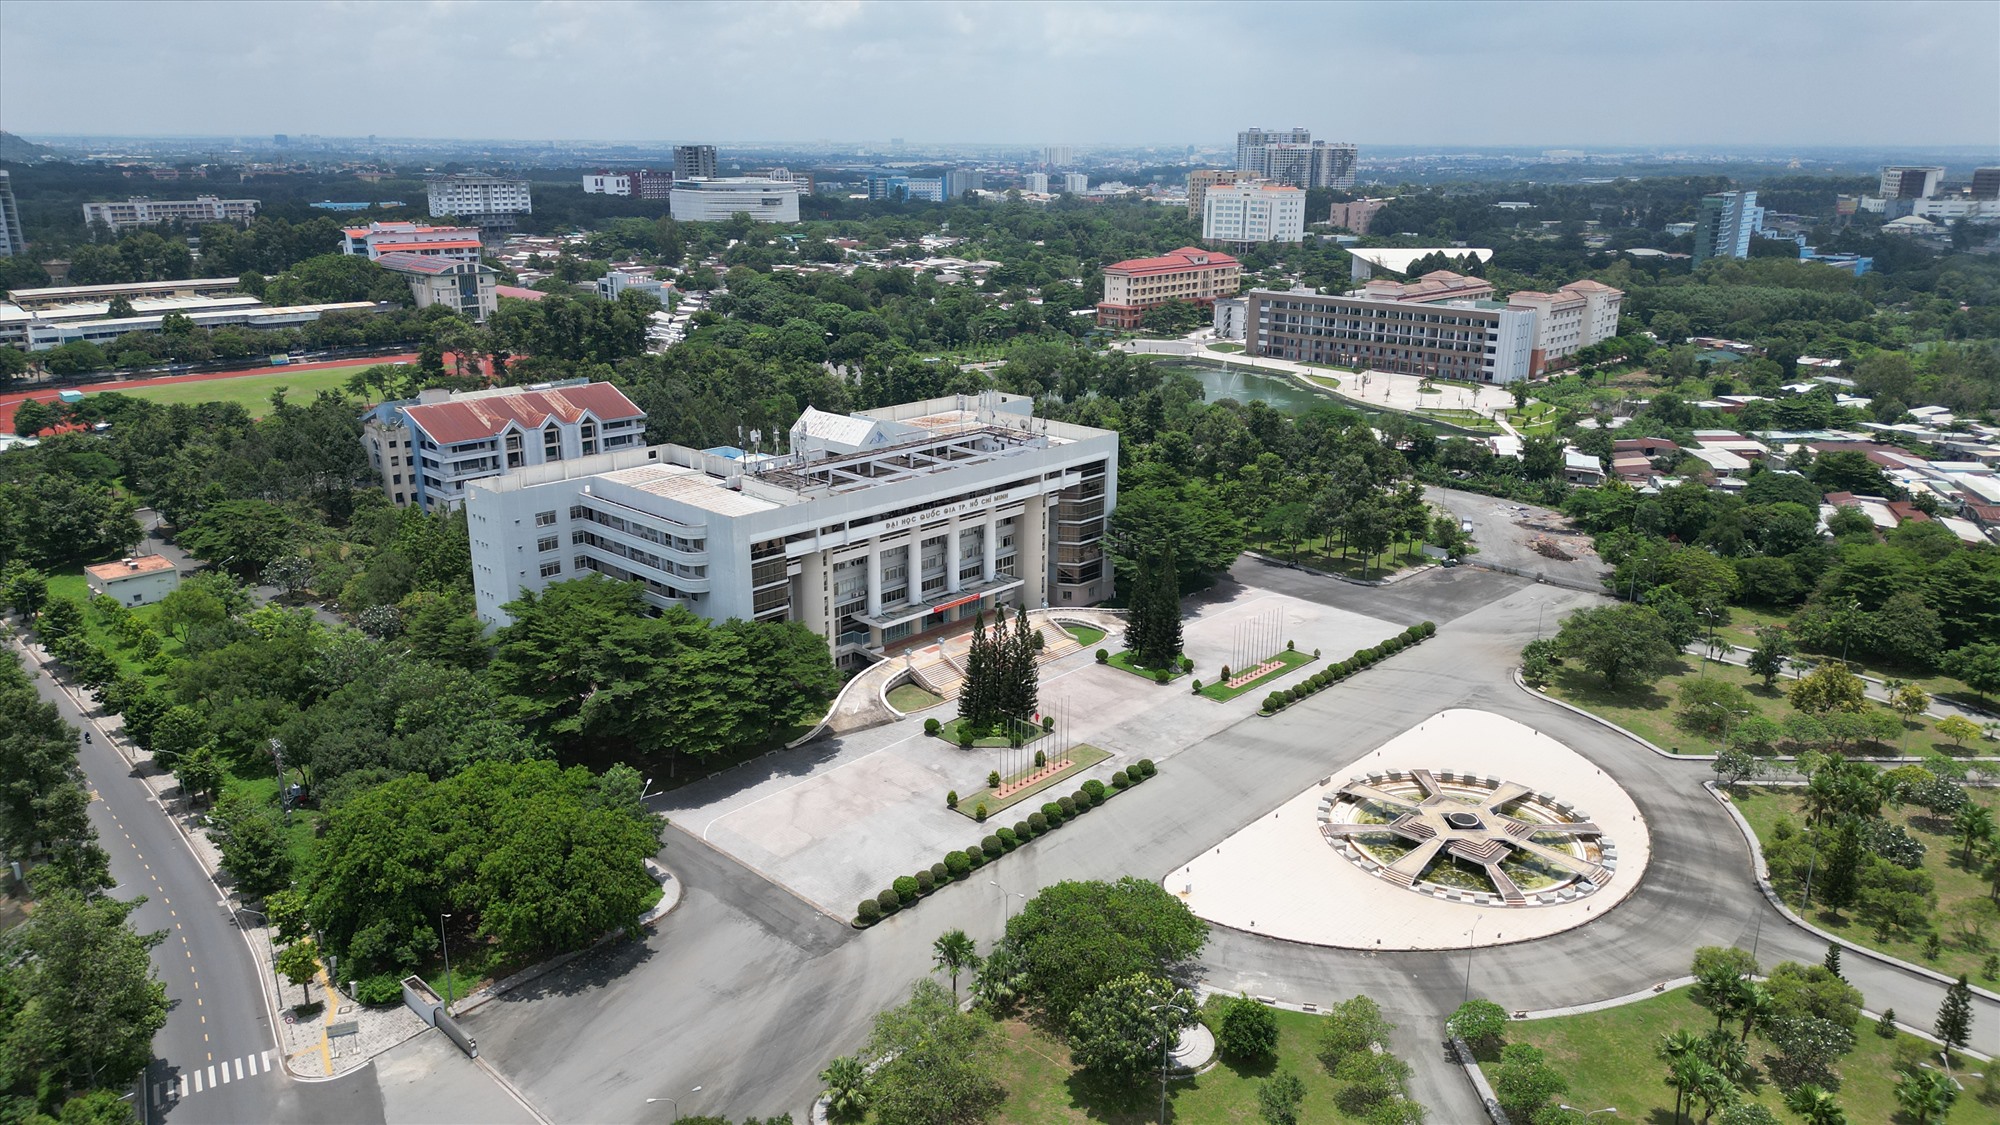 Đại học Quốc gia (ĐHQG) TPHCM được thành lập tháng 1.1995 và chính thức ra mắt vào tháng 2.1996, được xây dựng trên diện tích 643 ha thuộc TP Thủ Đức (TPHCM) và TP Dĩ An (Bình Dương).